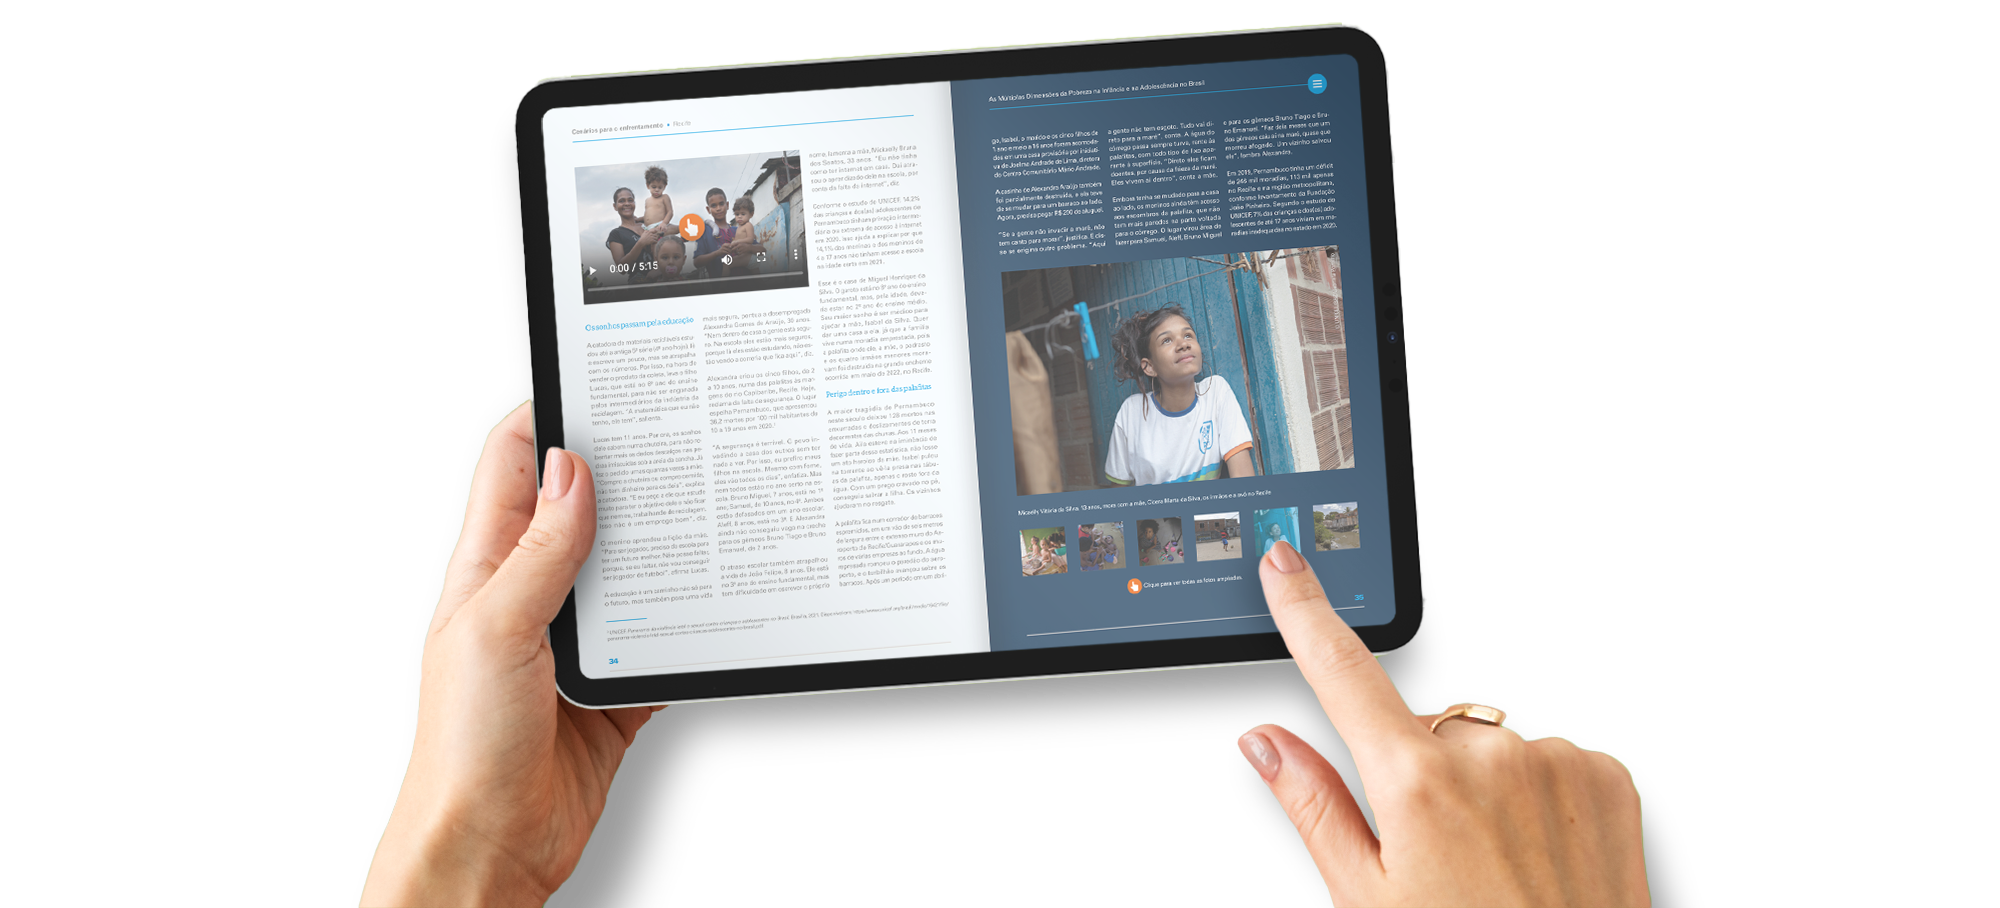 Simulação de um tablet com um livro interativo, incluindo textos, fotos, vídeo e galeria de imagens